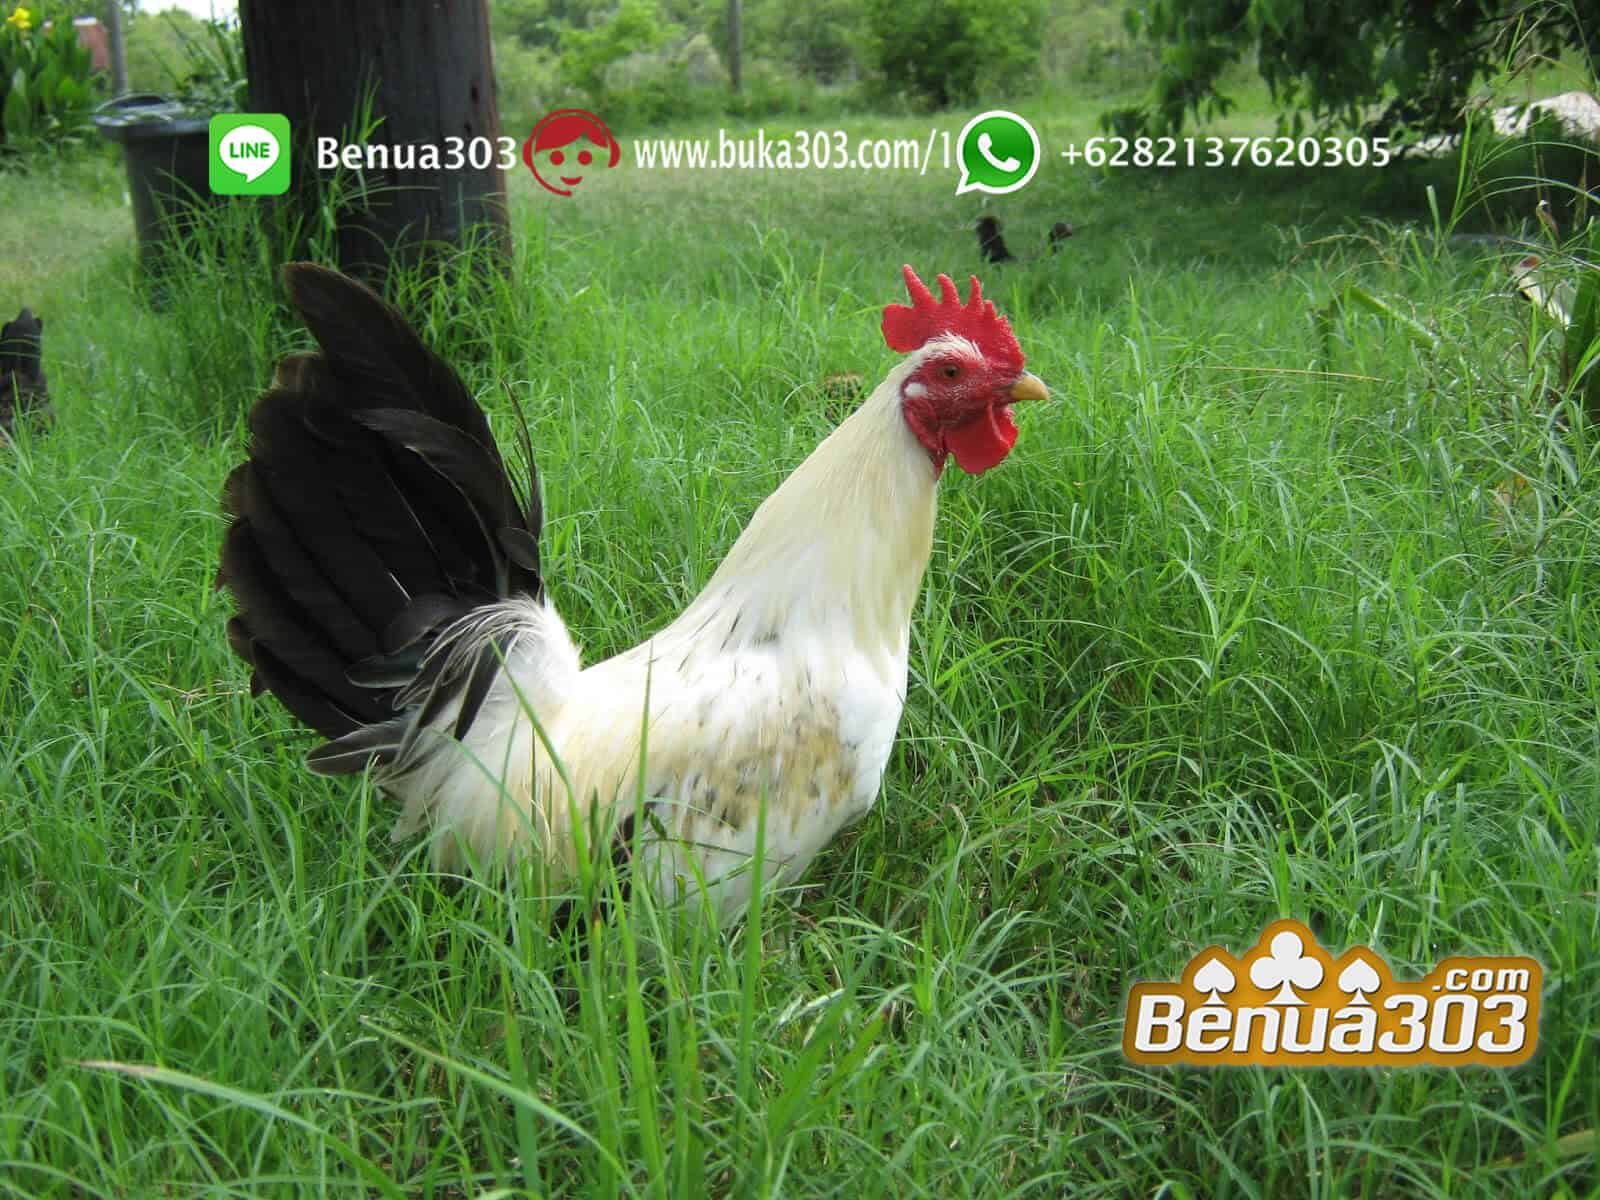 Keunggulan Jenis Ayam Peruvian S1288